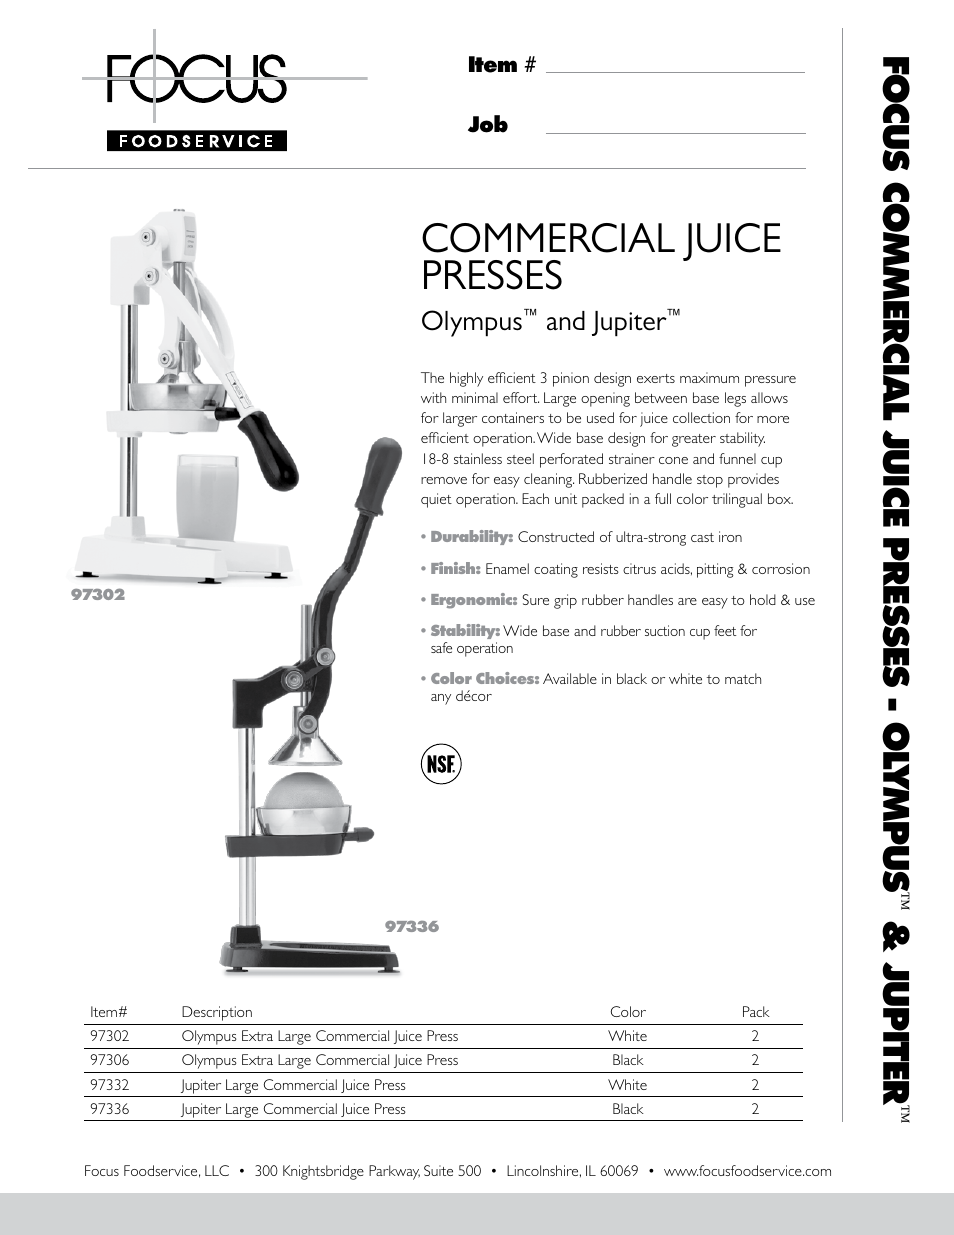 Black 97336 Focuse Foodservice Jupiter Large Commercial Juice Press 